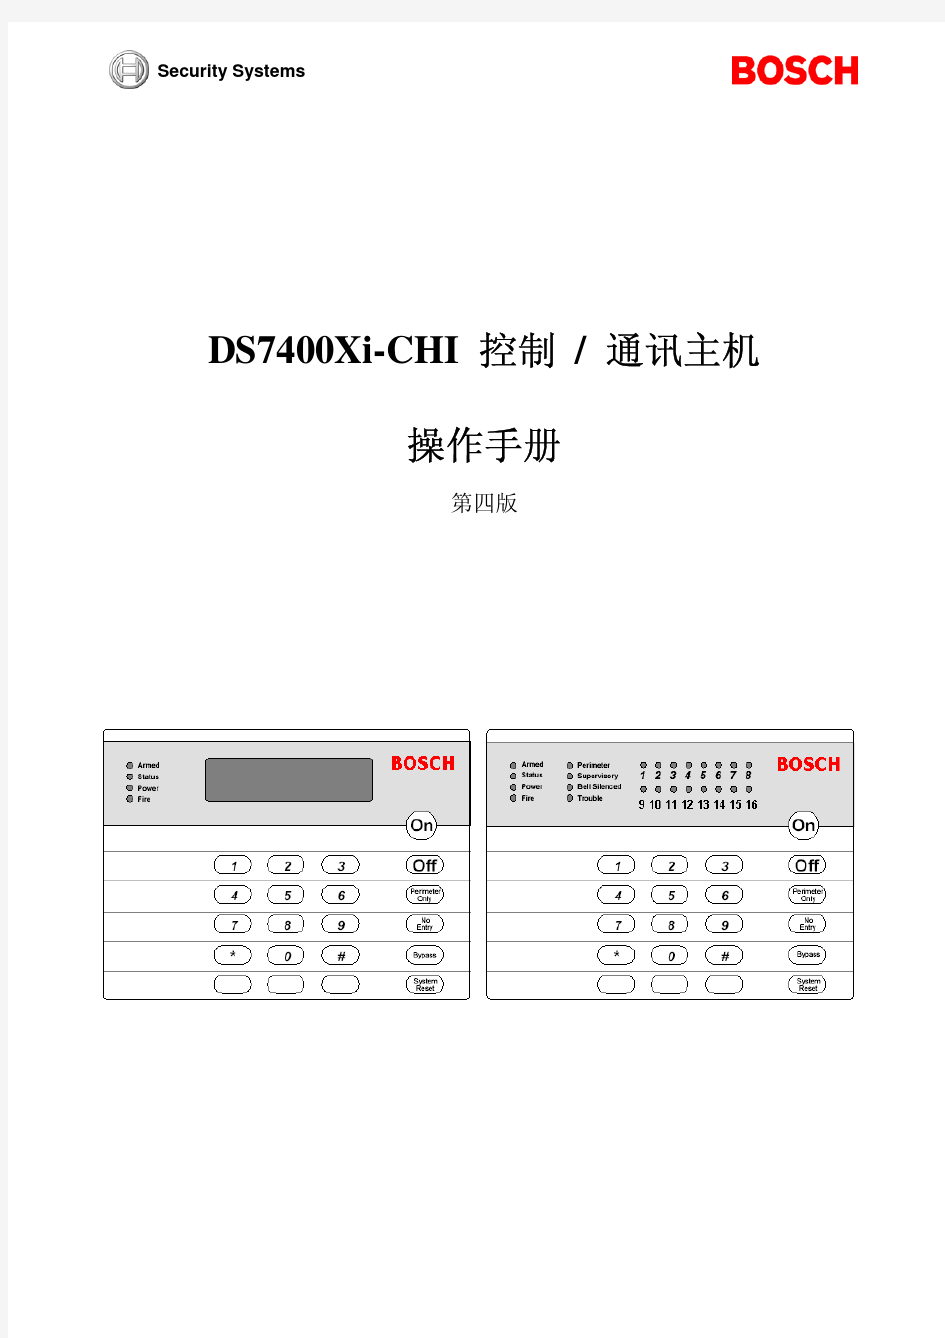 DS7400Xi-CHI V4 编程使用手册(041118)